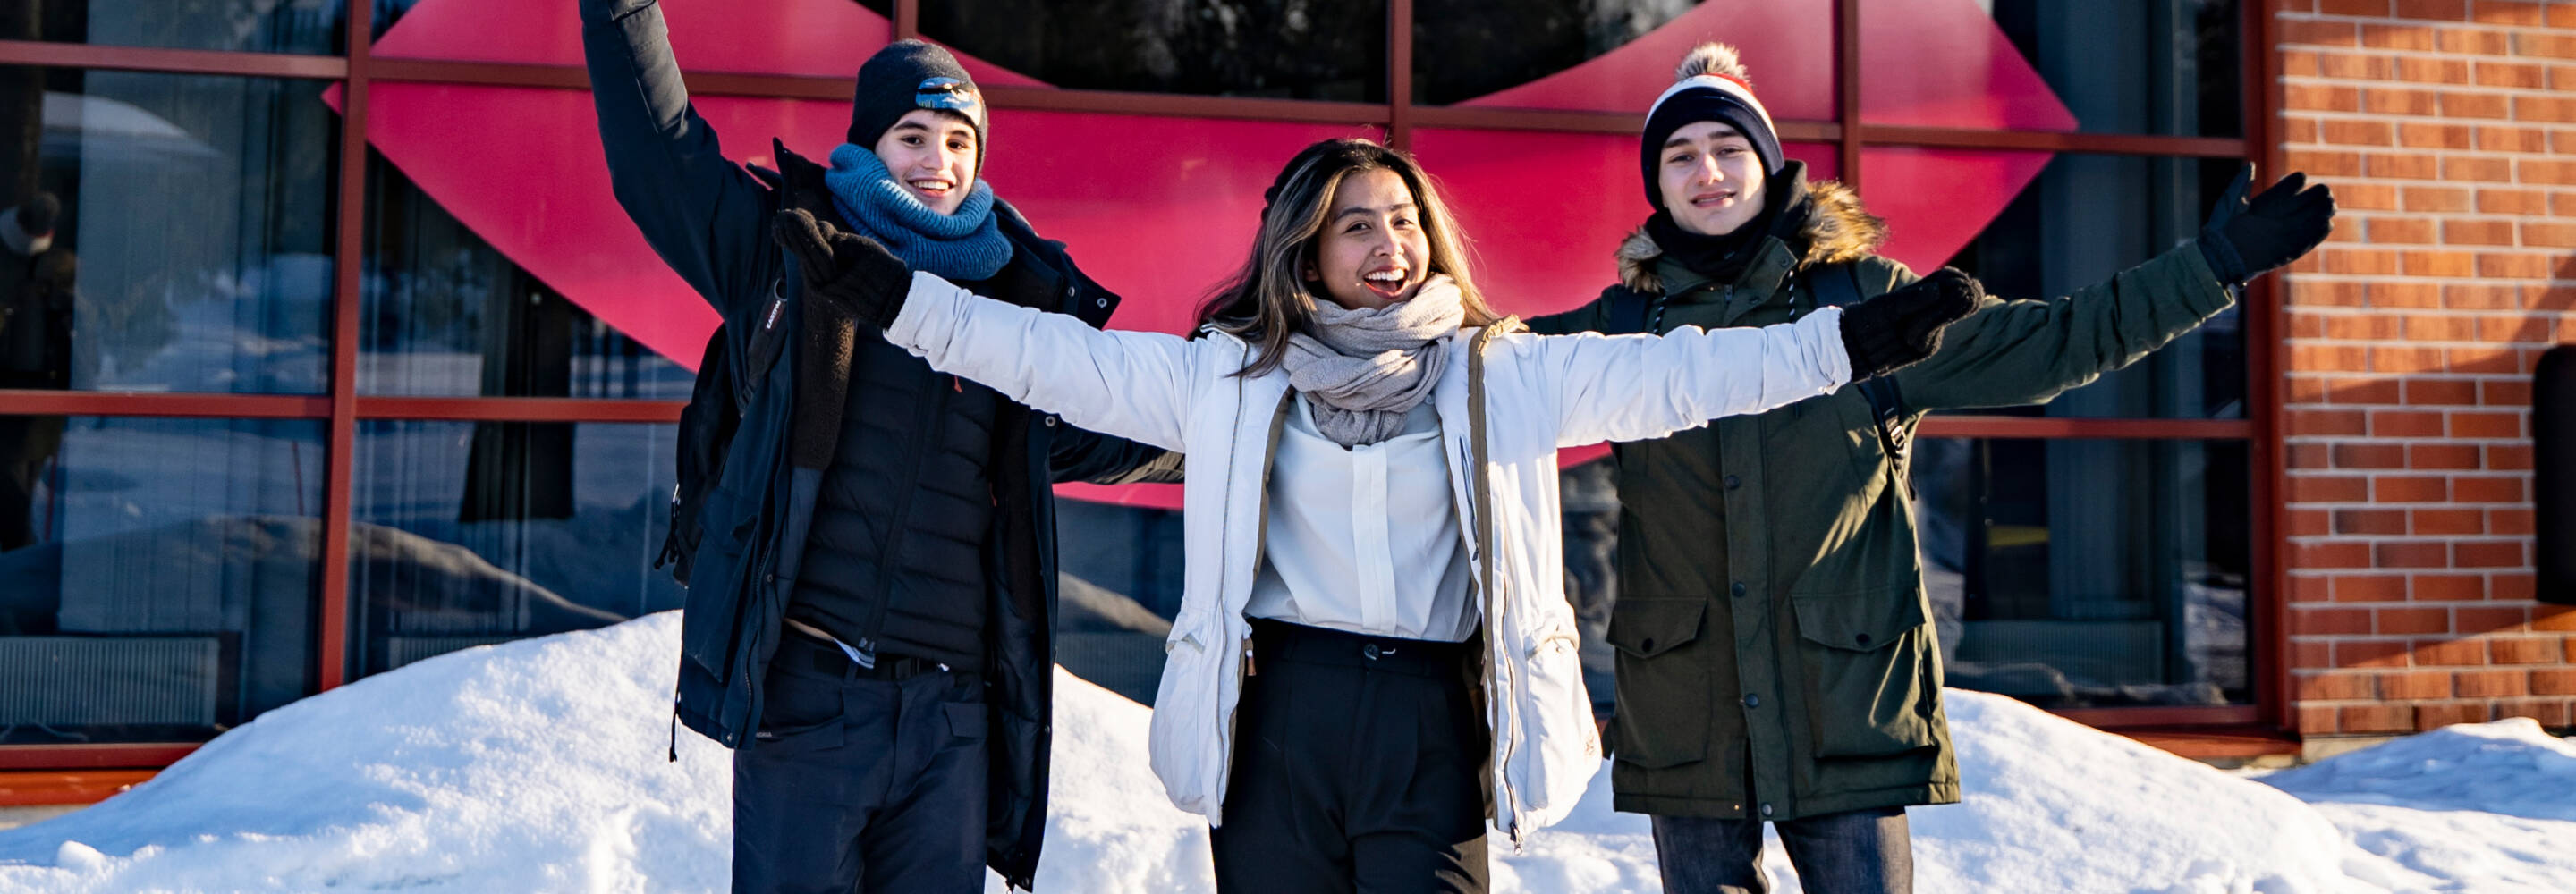 Kolme kansainvälistä opiskelijaa kuvattuna Talonpojankadun kampuksen edessä talvella